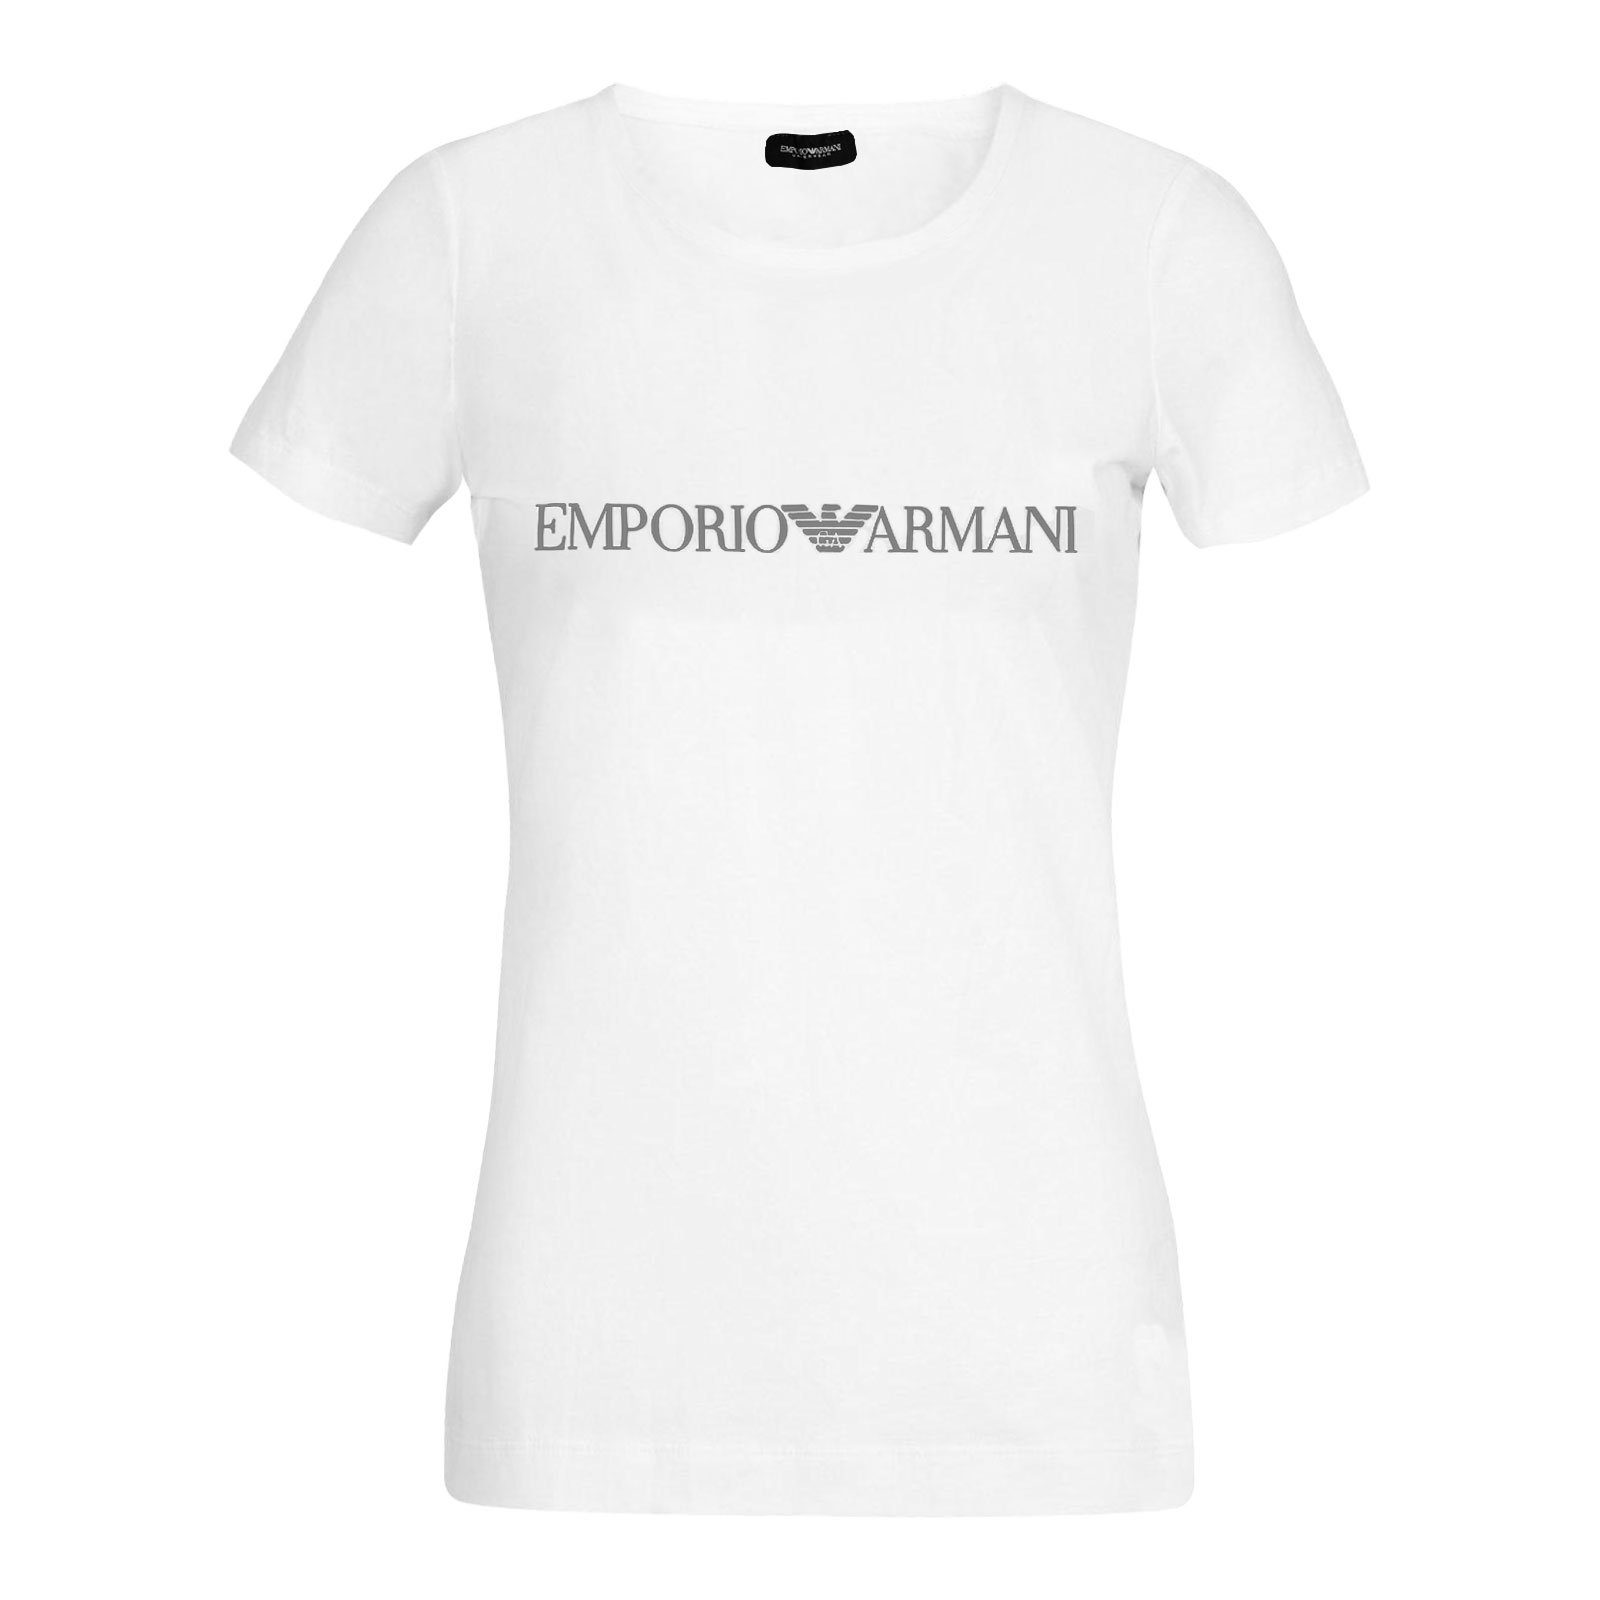 Emporio Armani T-Shirt white Markenschriftzug der Loungewear-Shirt Brust Round 00010 Neck mit auf